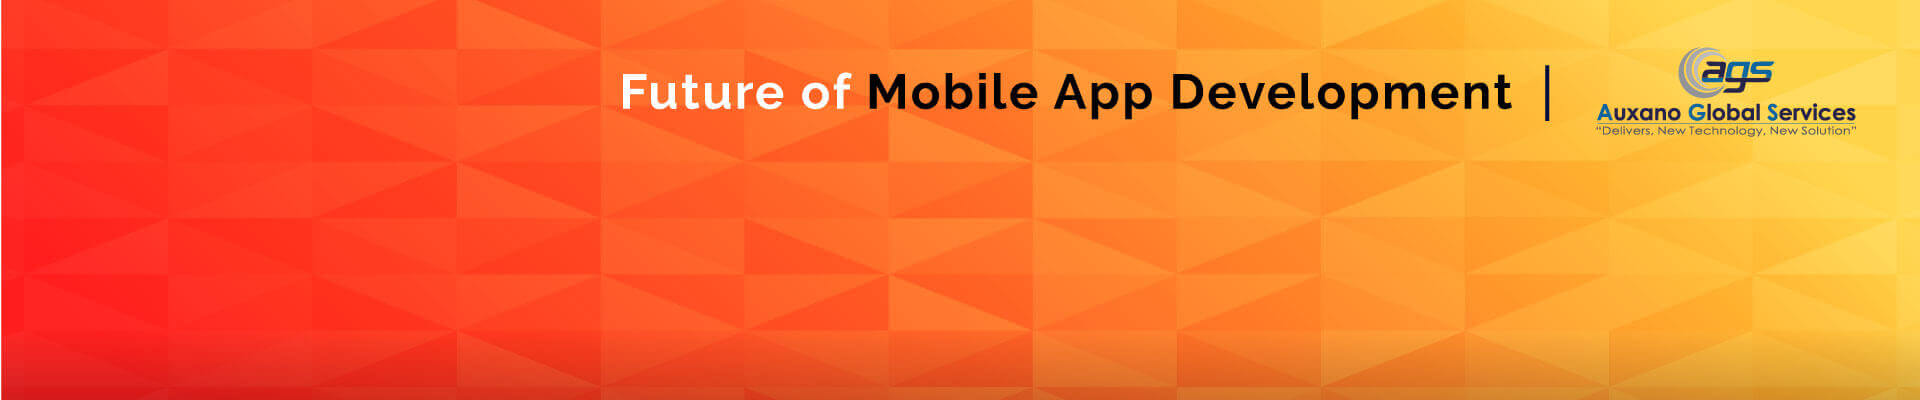 Futue-of-Mobile-App-Development-Inner-Banner